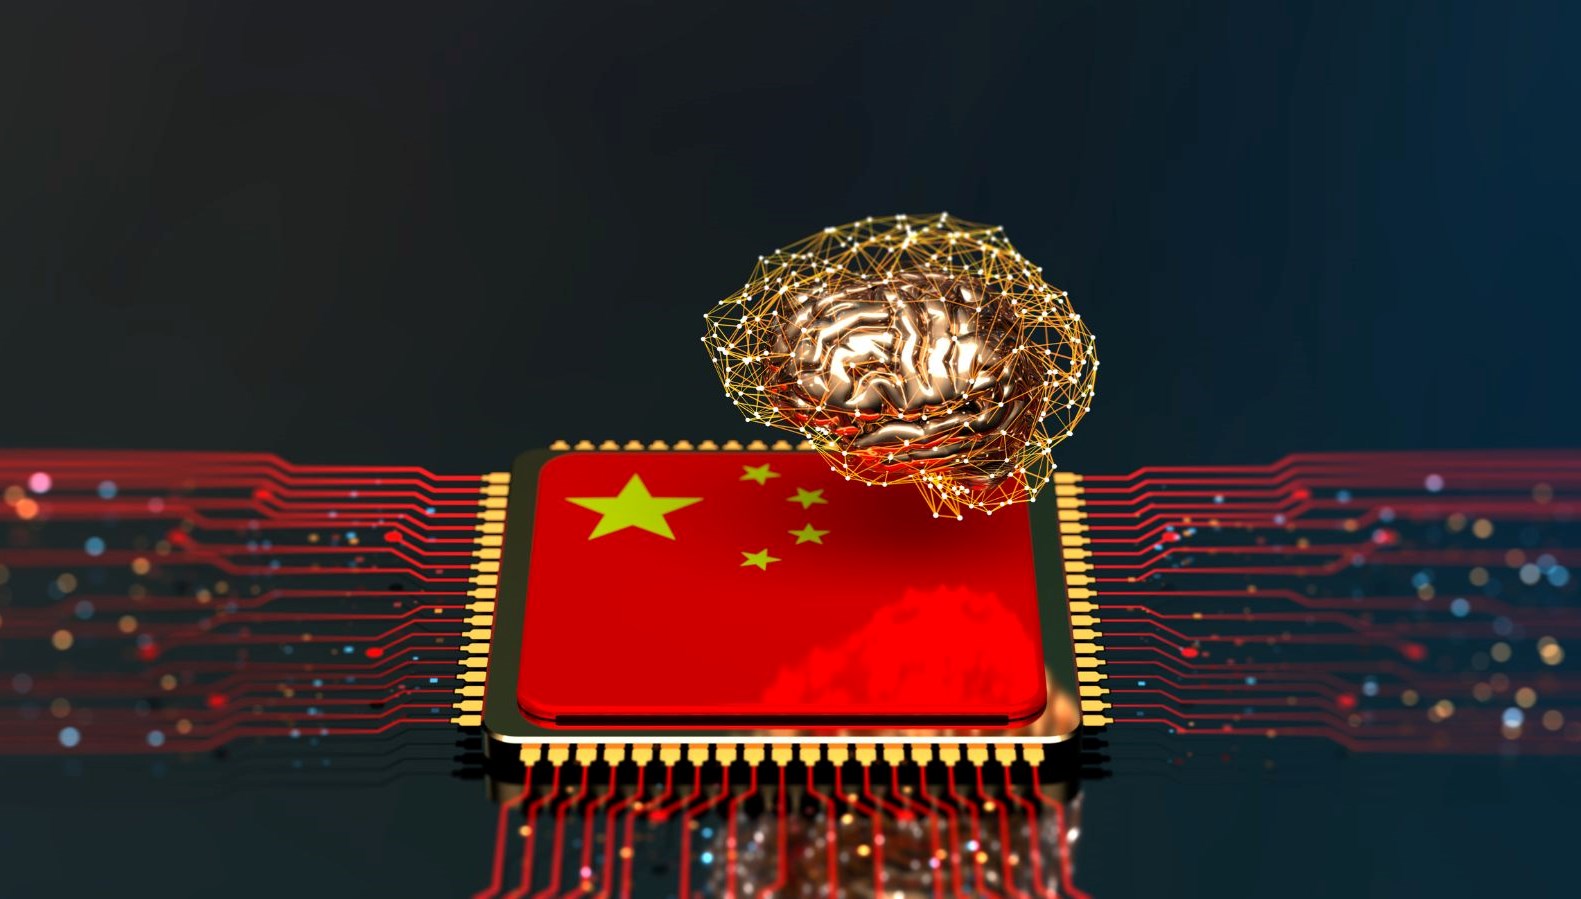 OpenAI’ın CEO’su Altman’dan Çin’e karşı “ABD liderliğinde küresel koalisyon” çağrısı